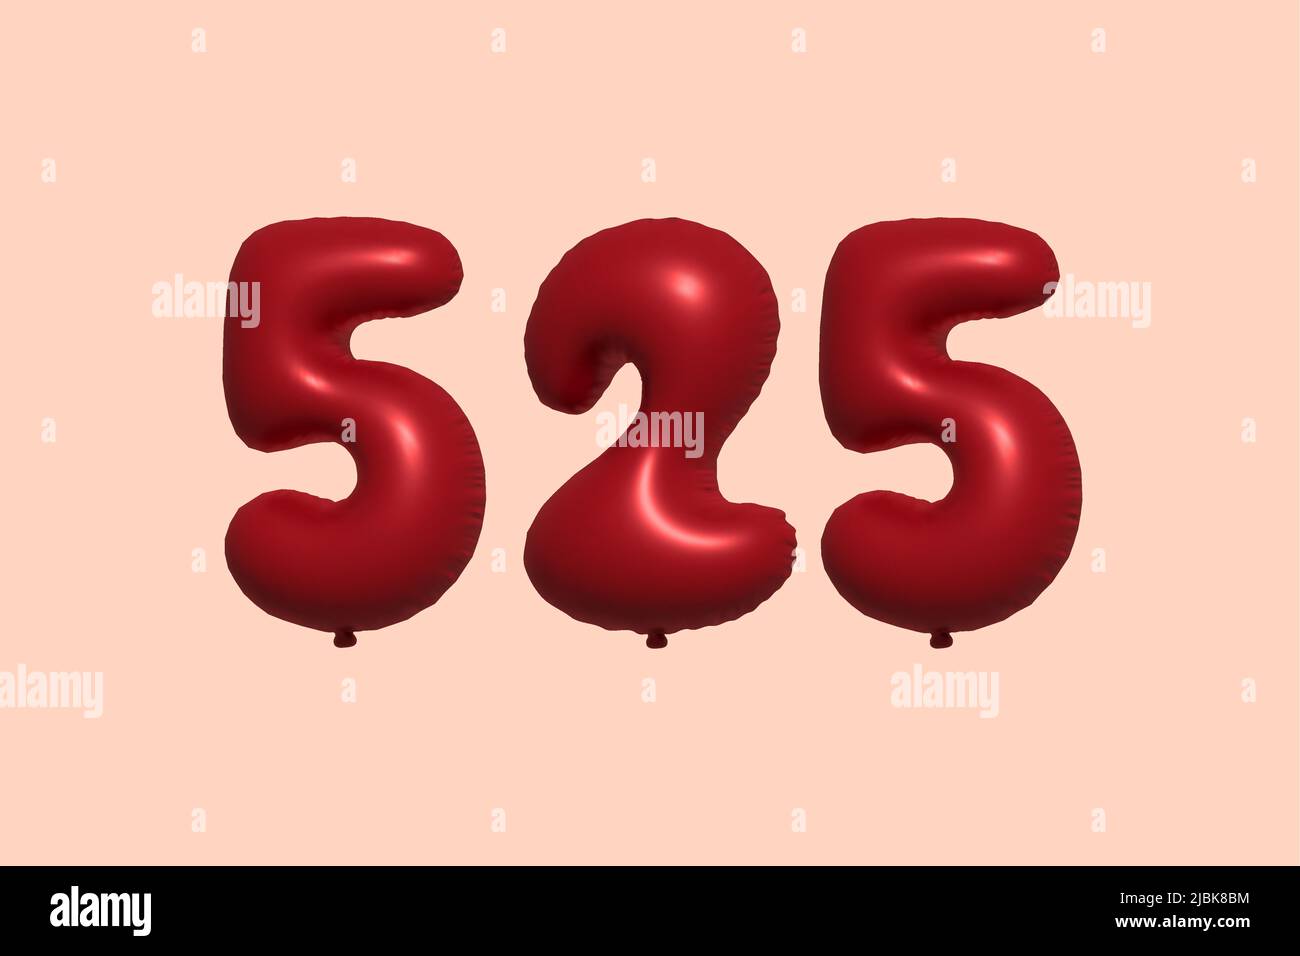 525 3D Zahlenballon aus realistischem metallischem Luftballon 3D Rendering. 3D Rote Heliumballons zum Verkauf Dekoration Party Geburtstag, Jubiläum feiern, Hochzeitsfeiertag. Vektorgrafik Stock Vektor